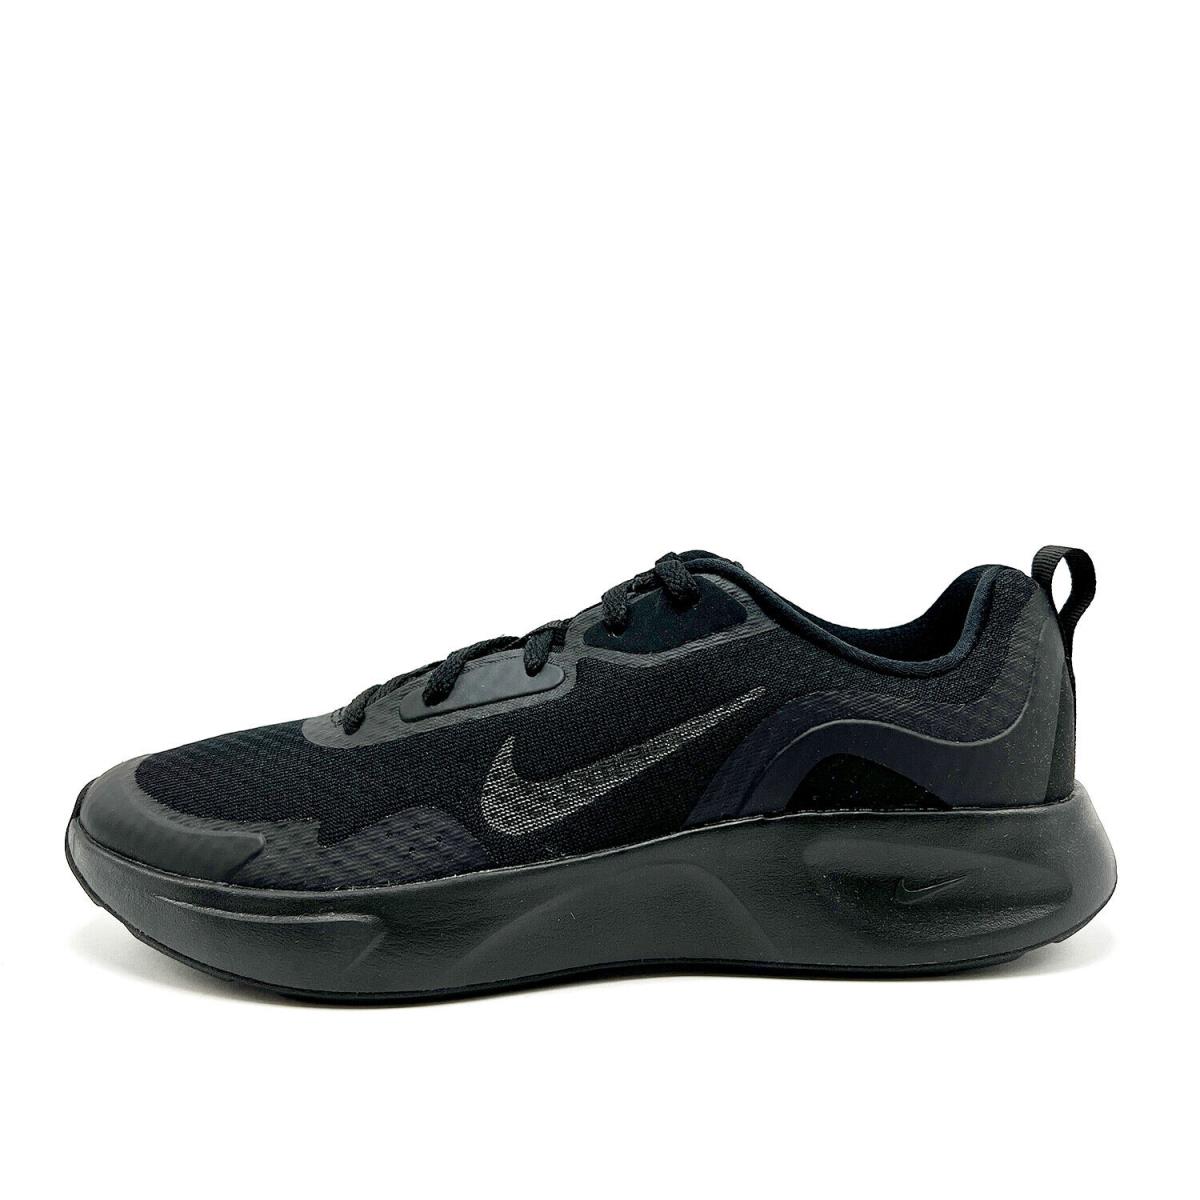 Marco Polo fe Guau Youth Nike Wearallday GS J Running Shoe Black CJ3816 001 Sz 7.0 |  883212502674 - Nike shoes - Black | SporTipTop